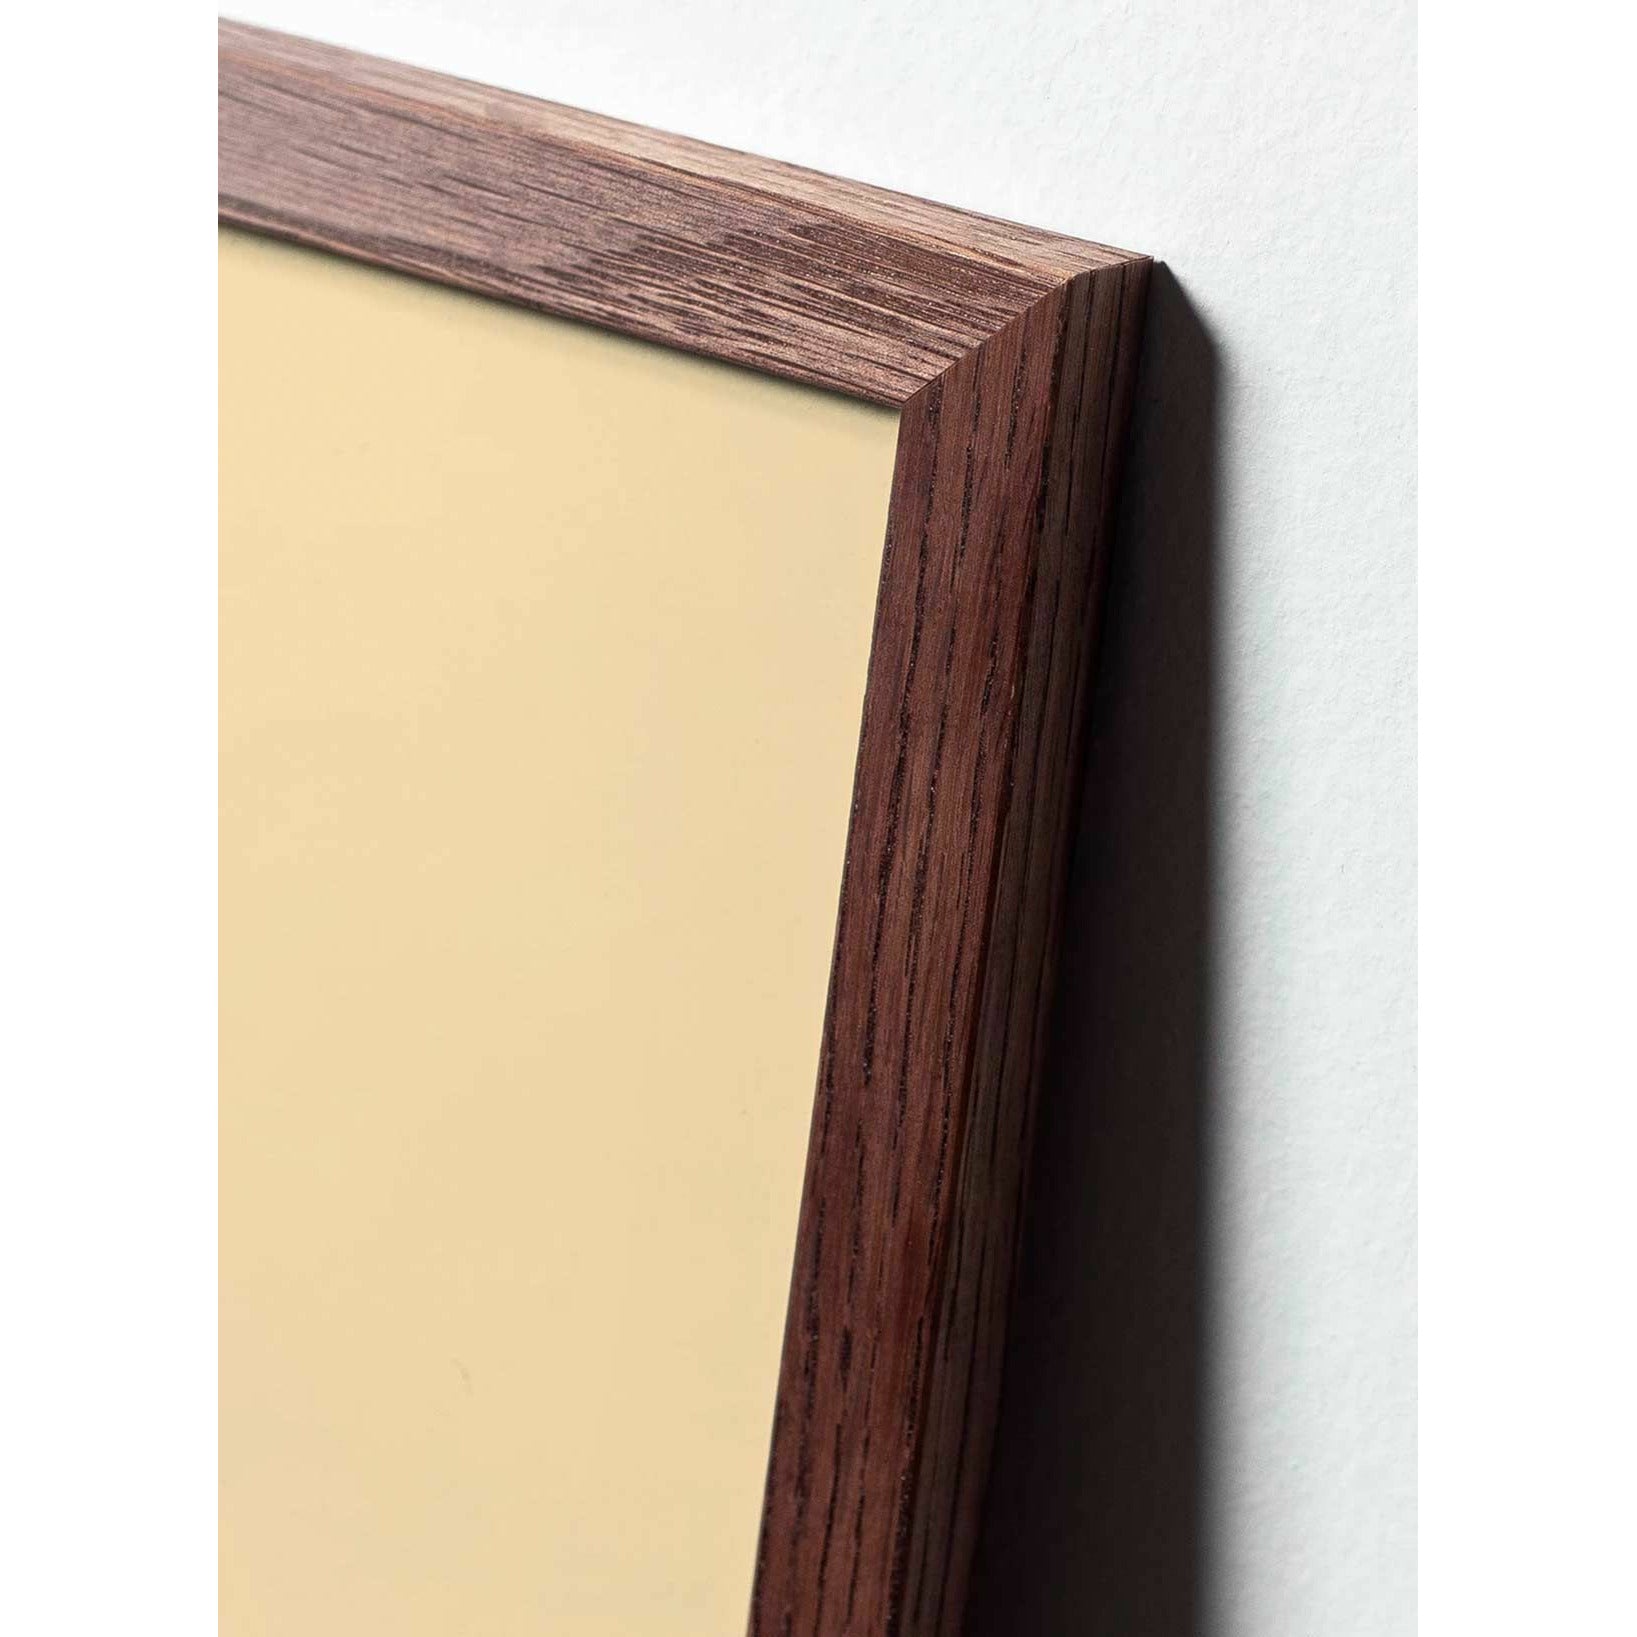 Póster clásico de Snowdrop de creación, marco hecho de madera oscura 30x40 cm, fondo negro